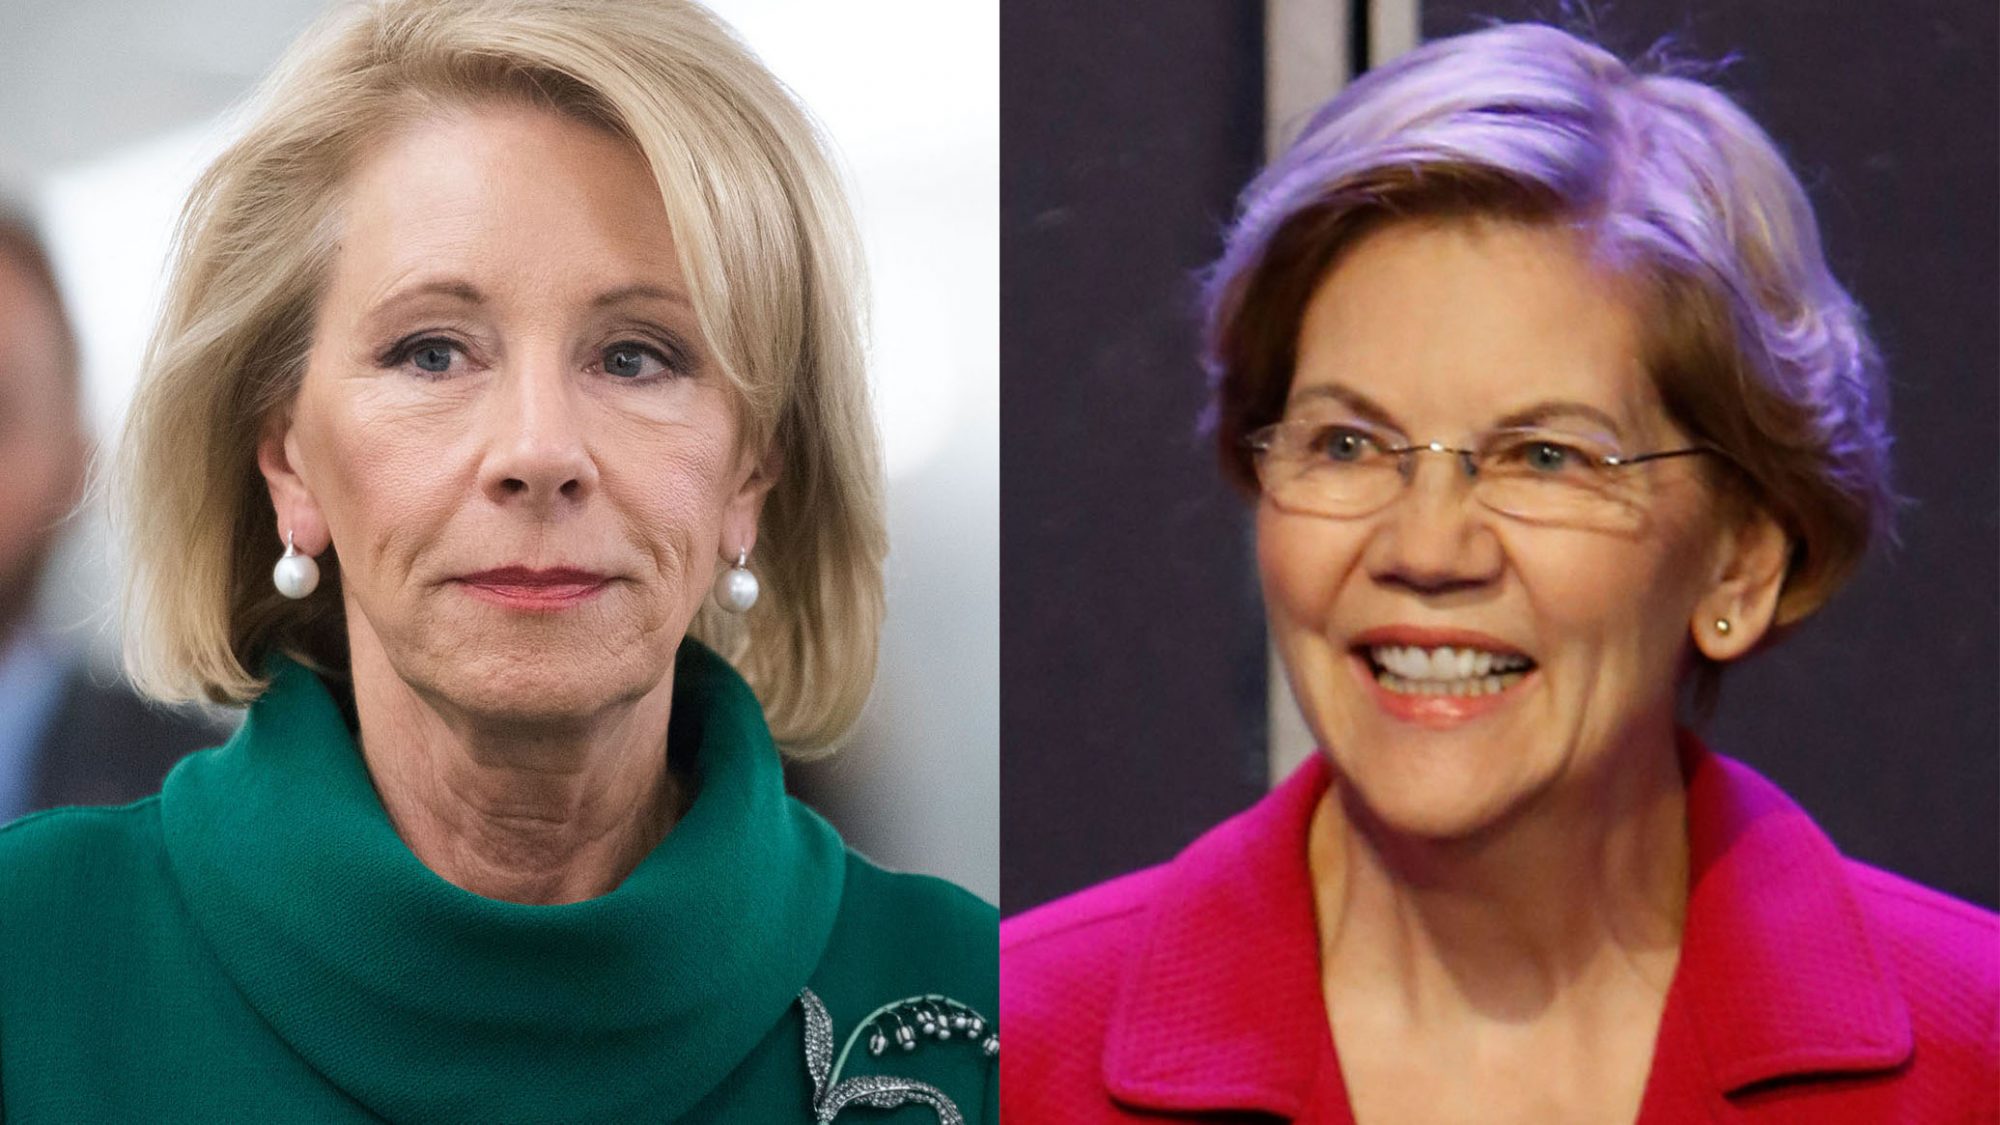 Elizabeth Warren llamó a Betsy DeVos la "peor secretaria de educación de la historia" en su mordaz despedida.